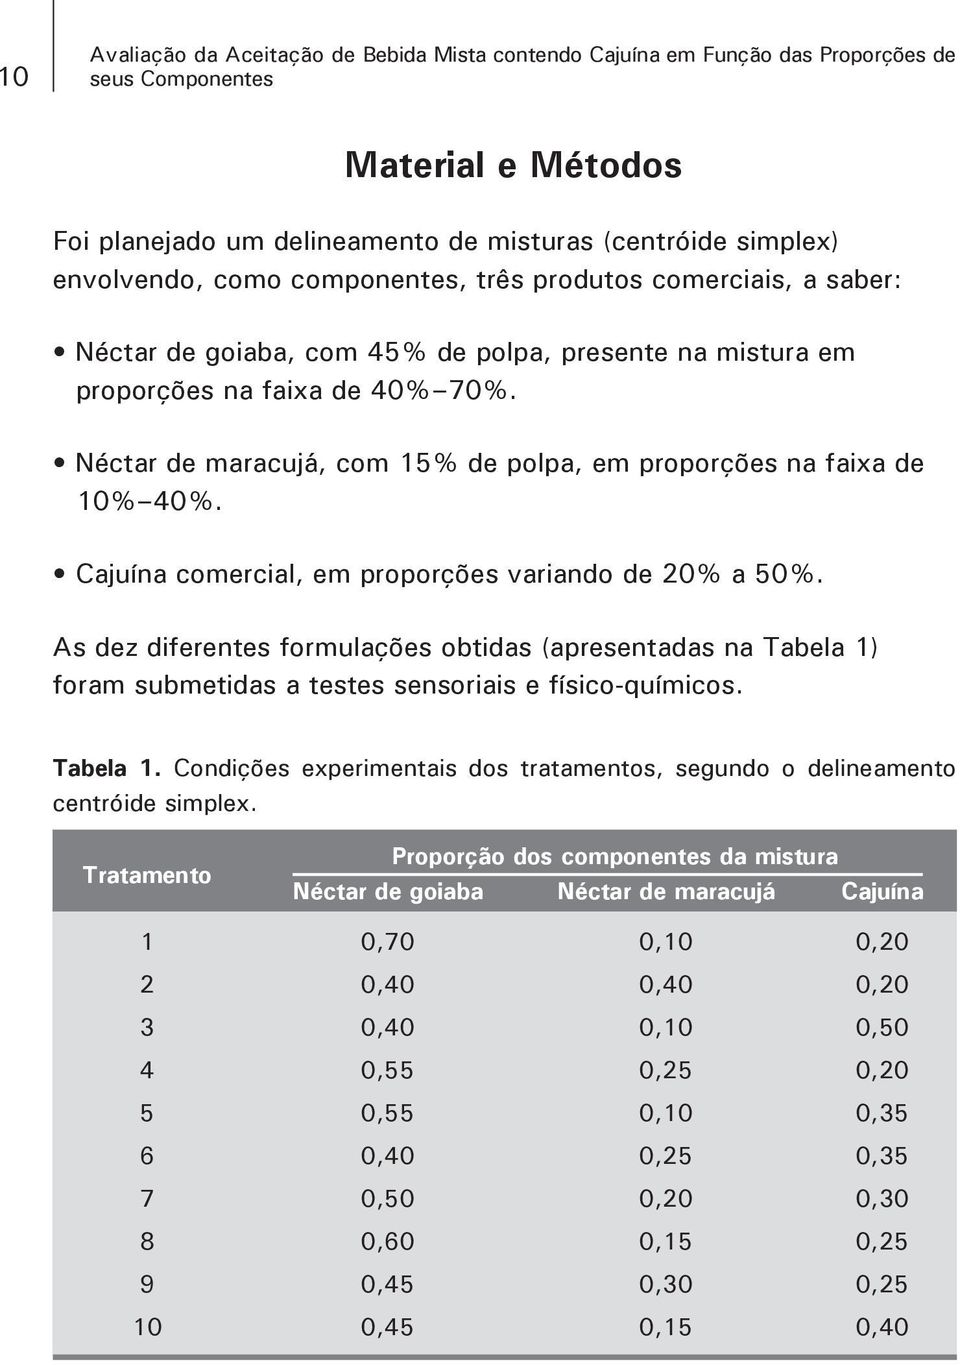 Néctar de maracujá, com 15% de polpa, em proporções na faixa de 10% 40%. Cajuína comercial, em proporções variando de 20% a 50%.